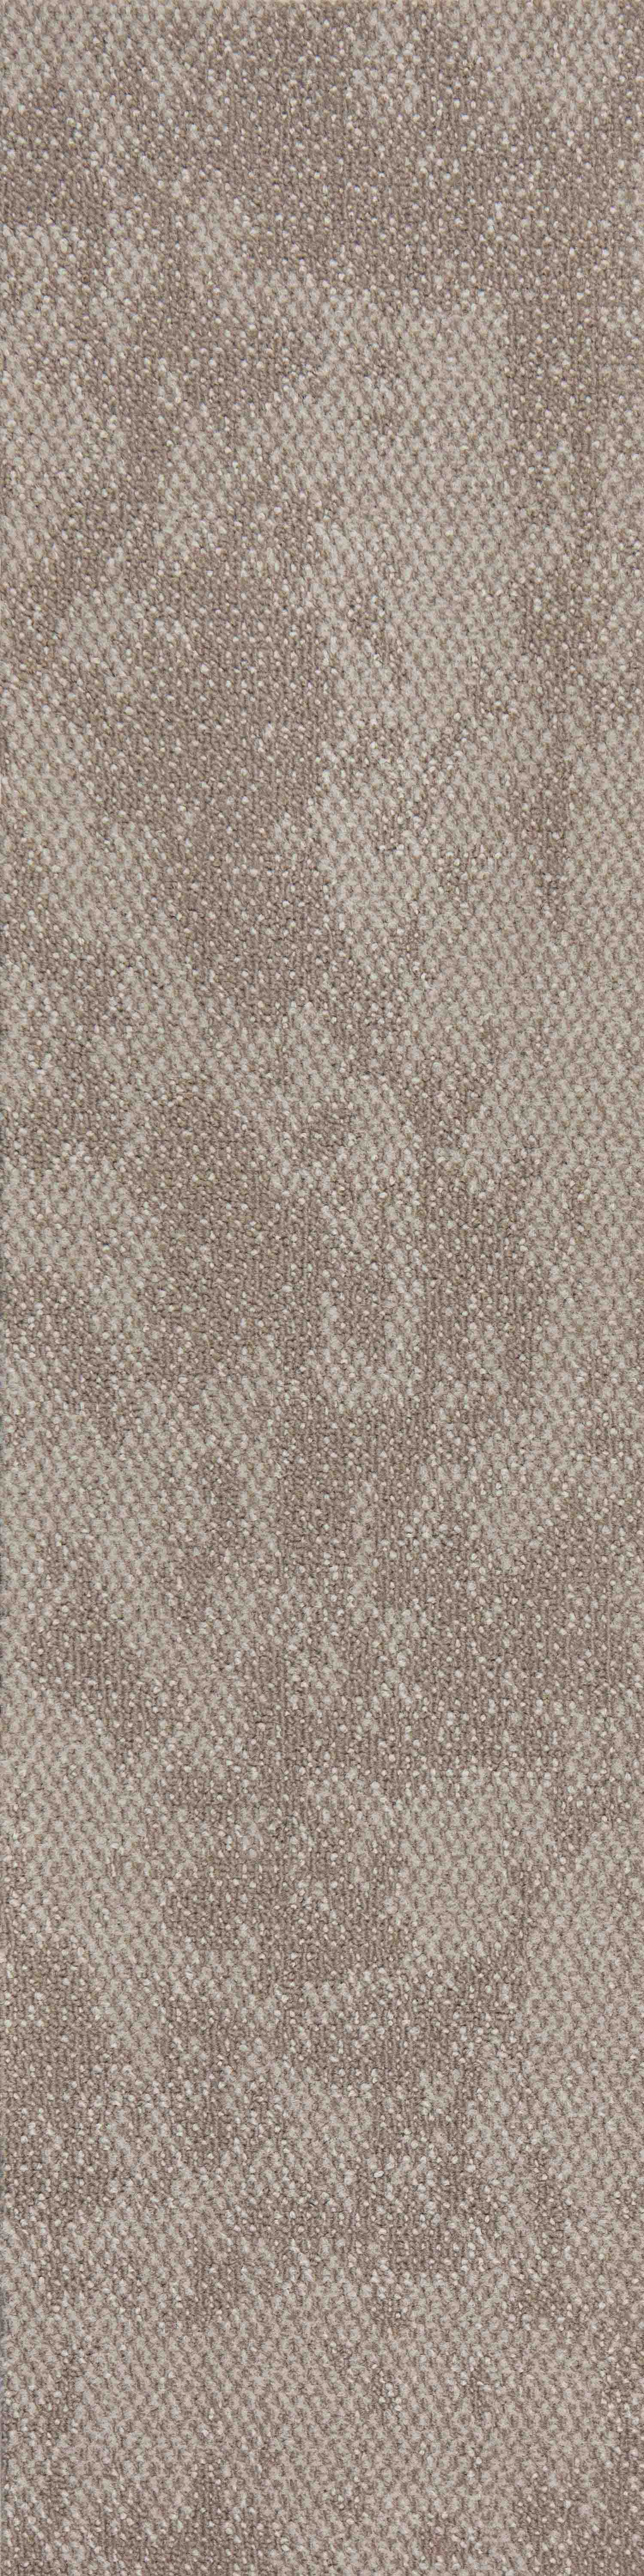 LAGOM193 Nylon Floor Carpet Designs And Price Factory